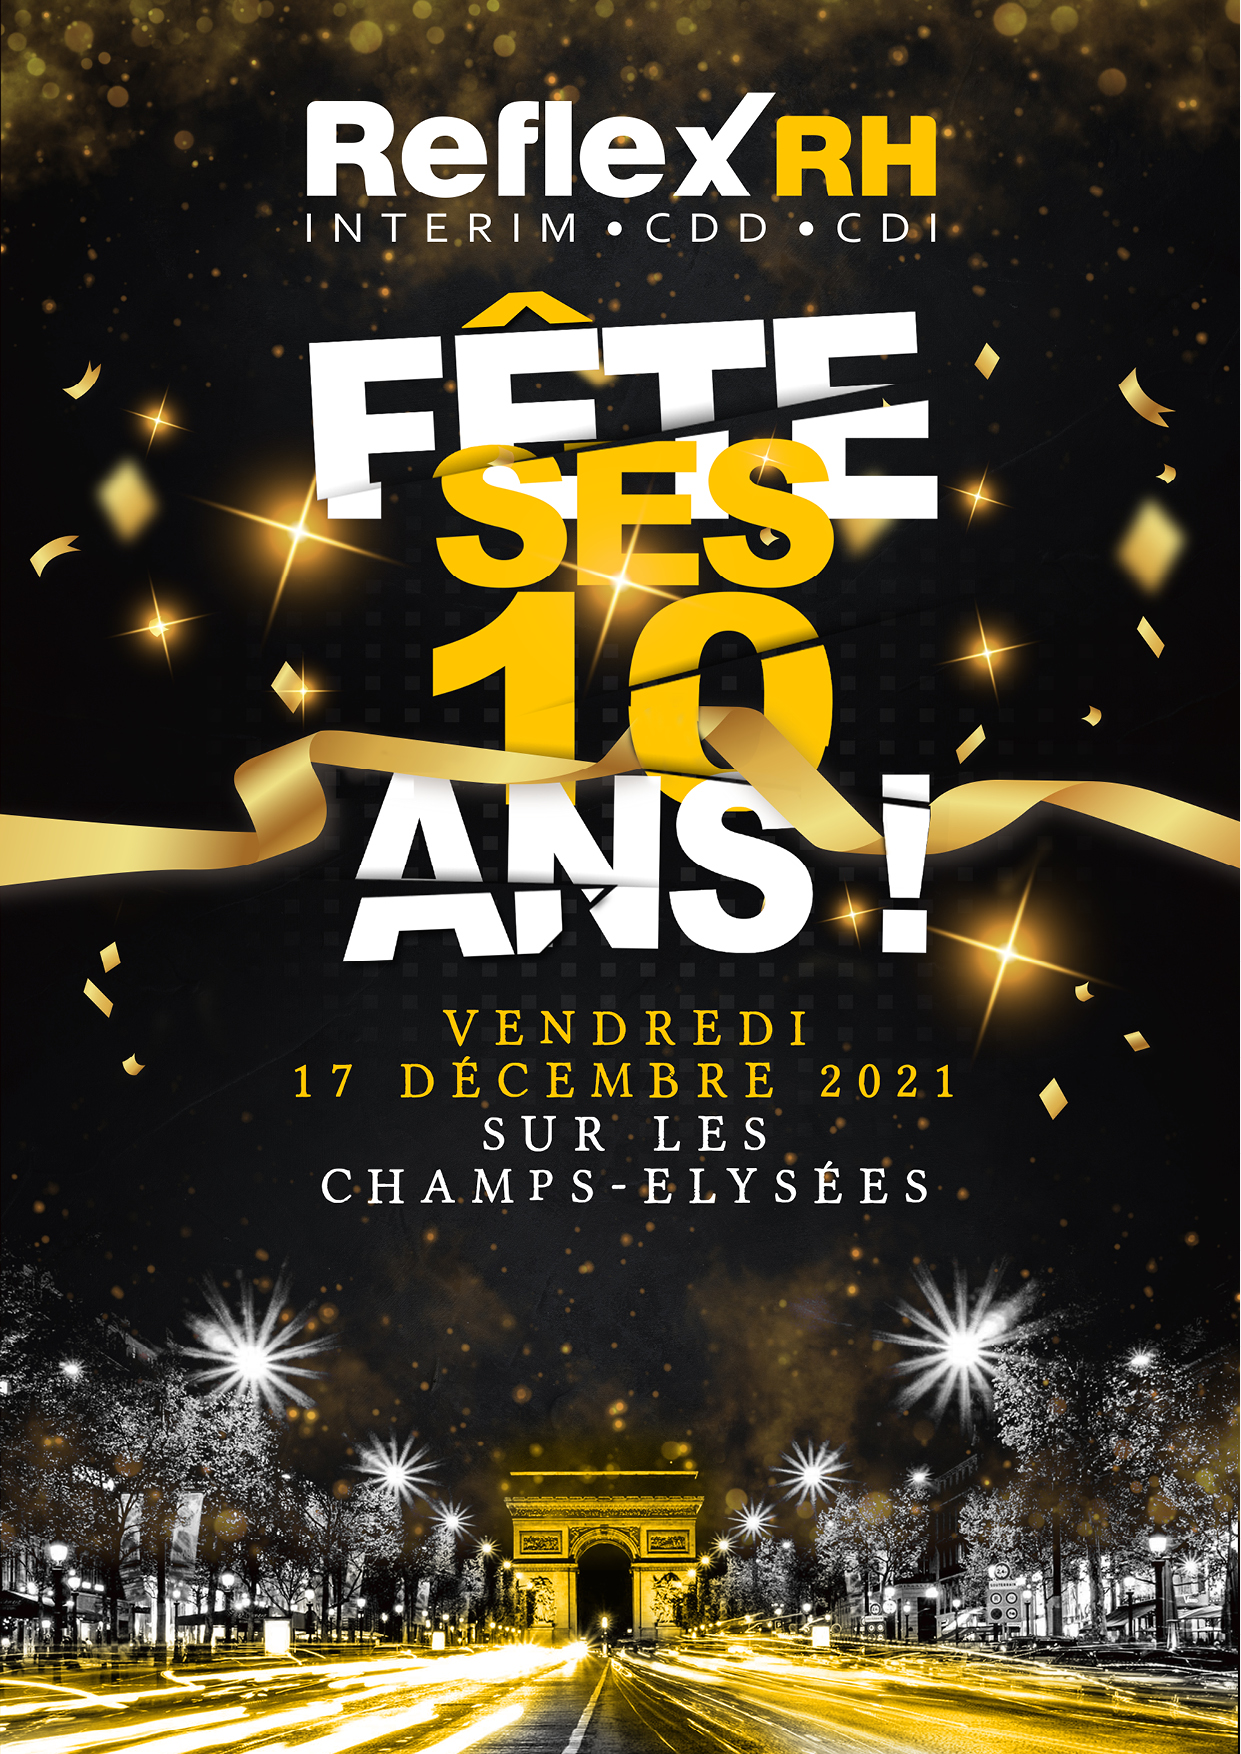 REFLEX RH fête ses 10 ans sur les Champs-Élysées !!